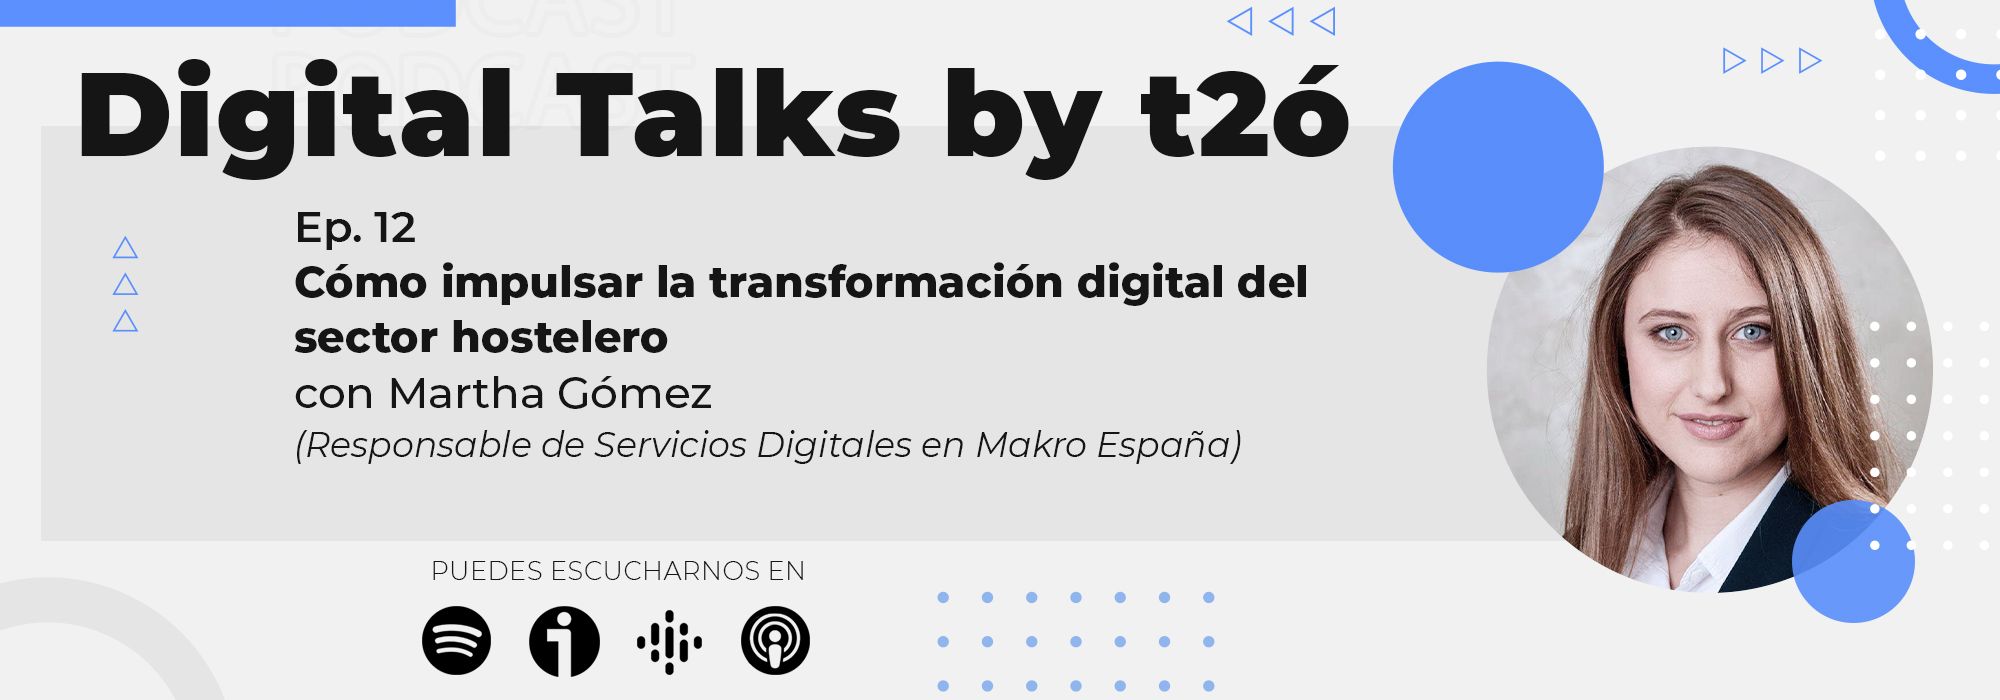 Cómo impulsar la transformación digital del sector hostelero [Podcast Digital Talks by t2ó]